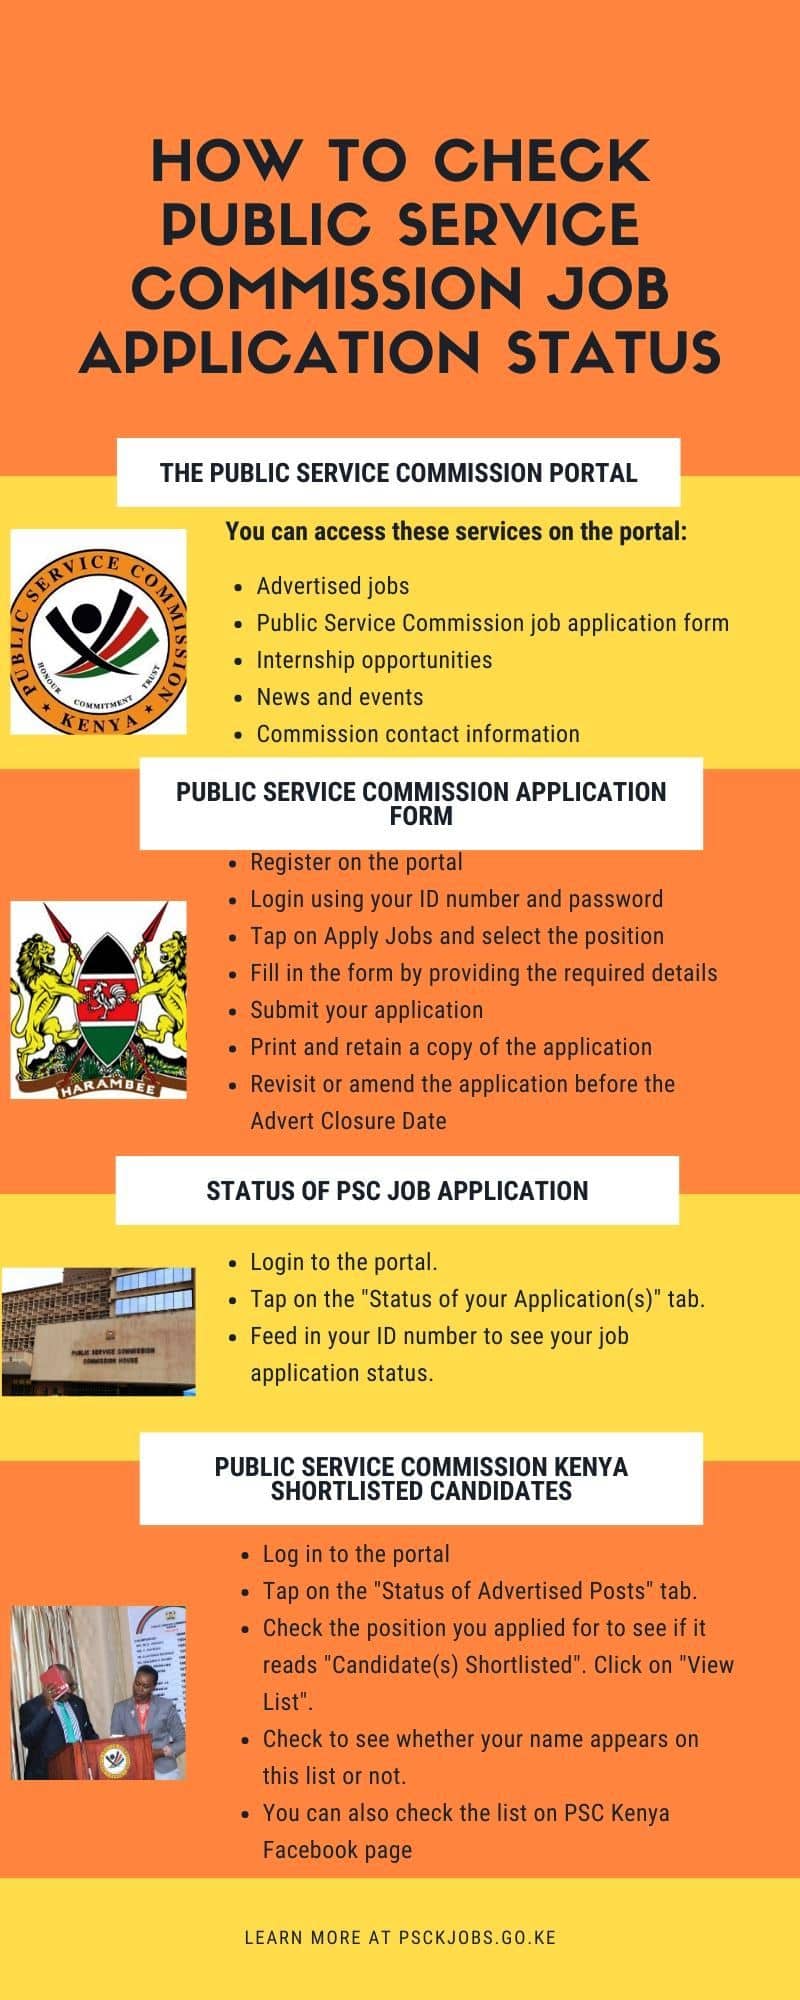 Public Service Commission job application status